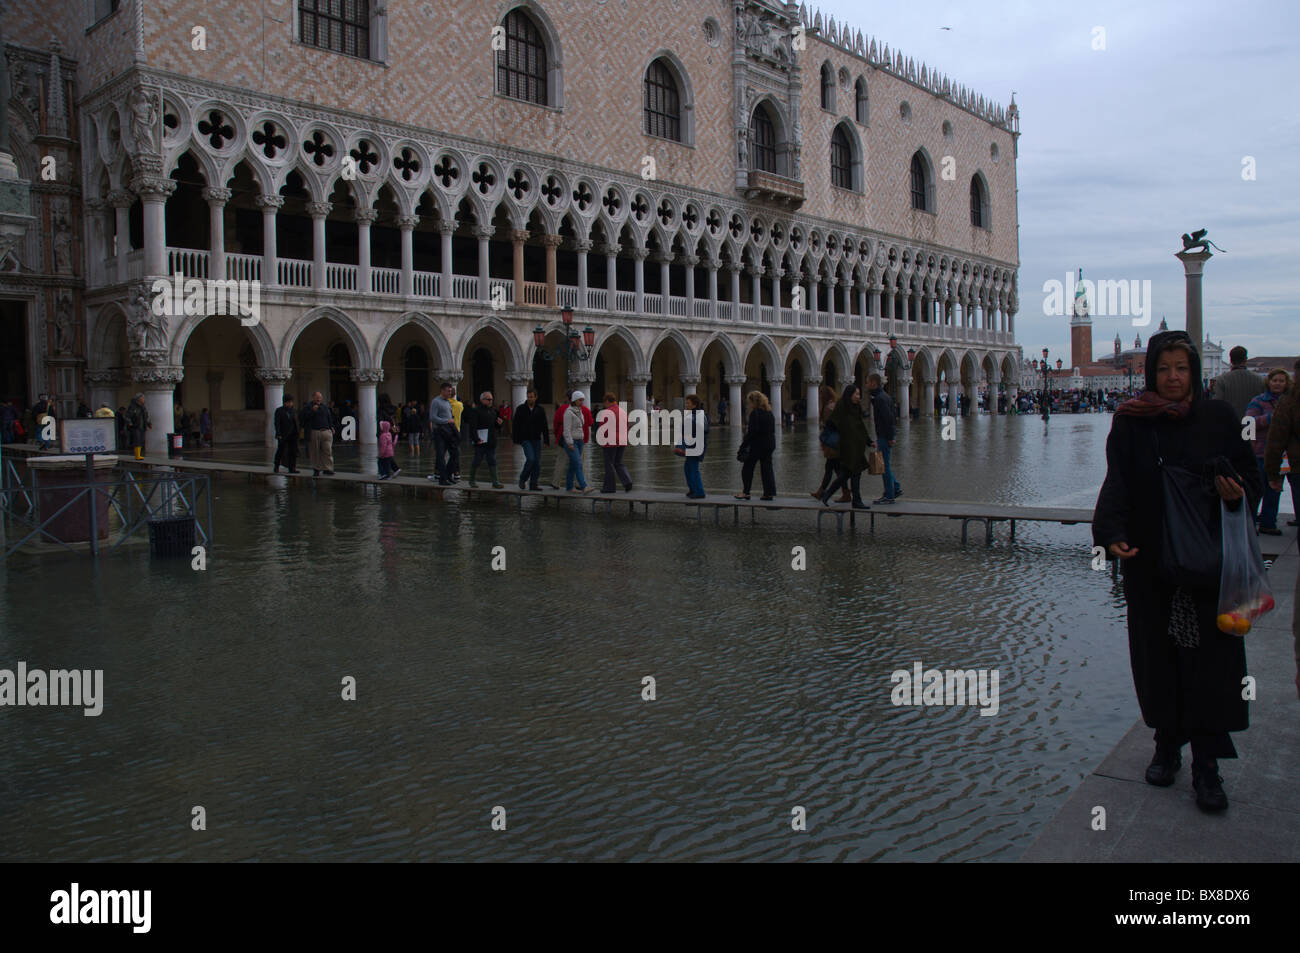 Le persone di fronte a Palazzo Ducale durante l'alta marea inondazioni zona di San Marco Venezia Veneto Italia del nord Europa Foto Stock